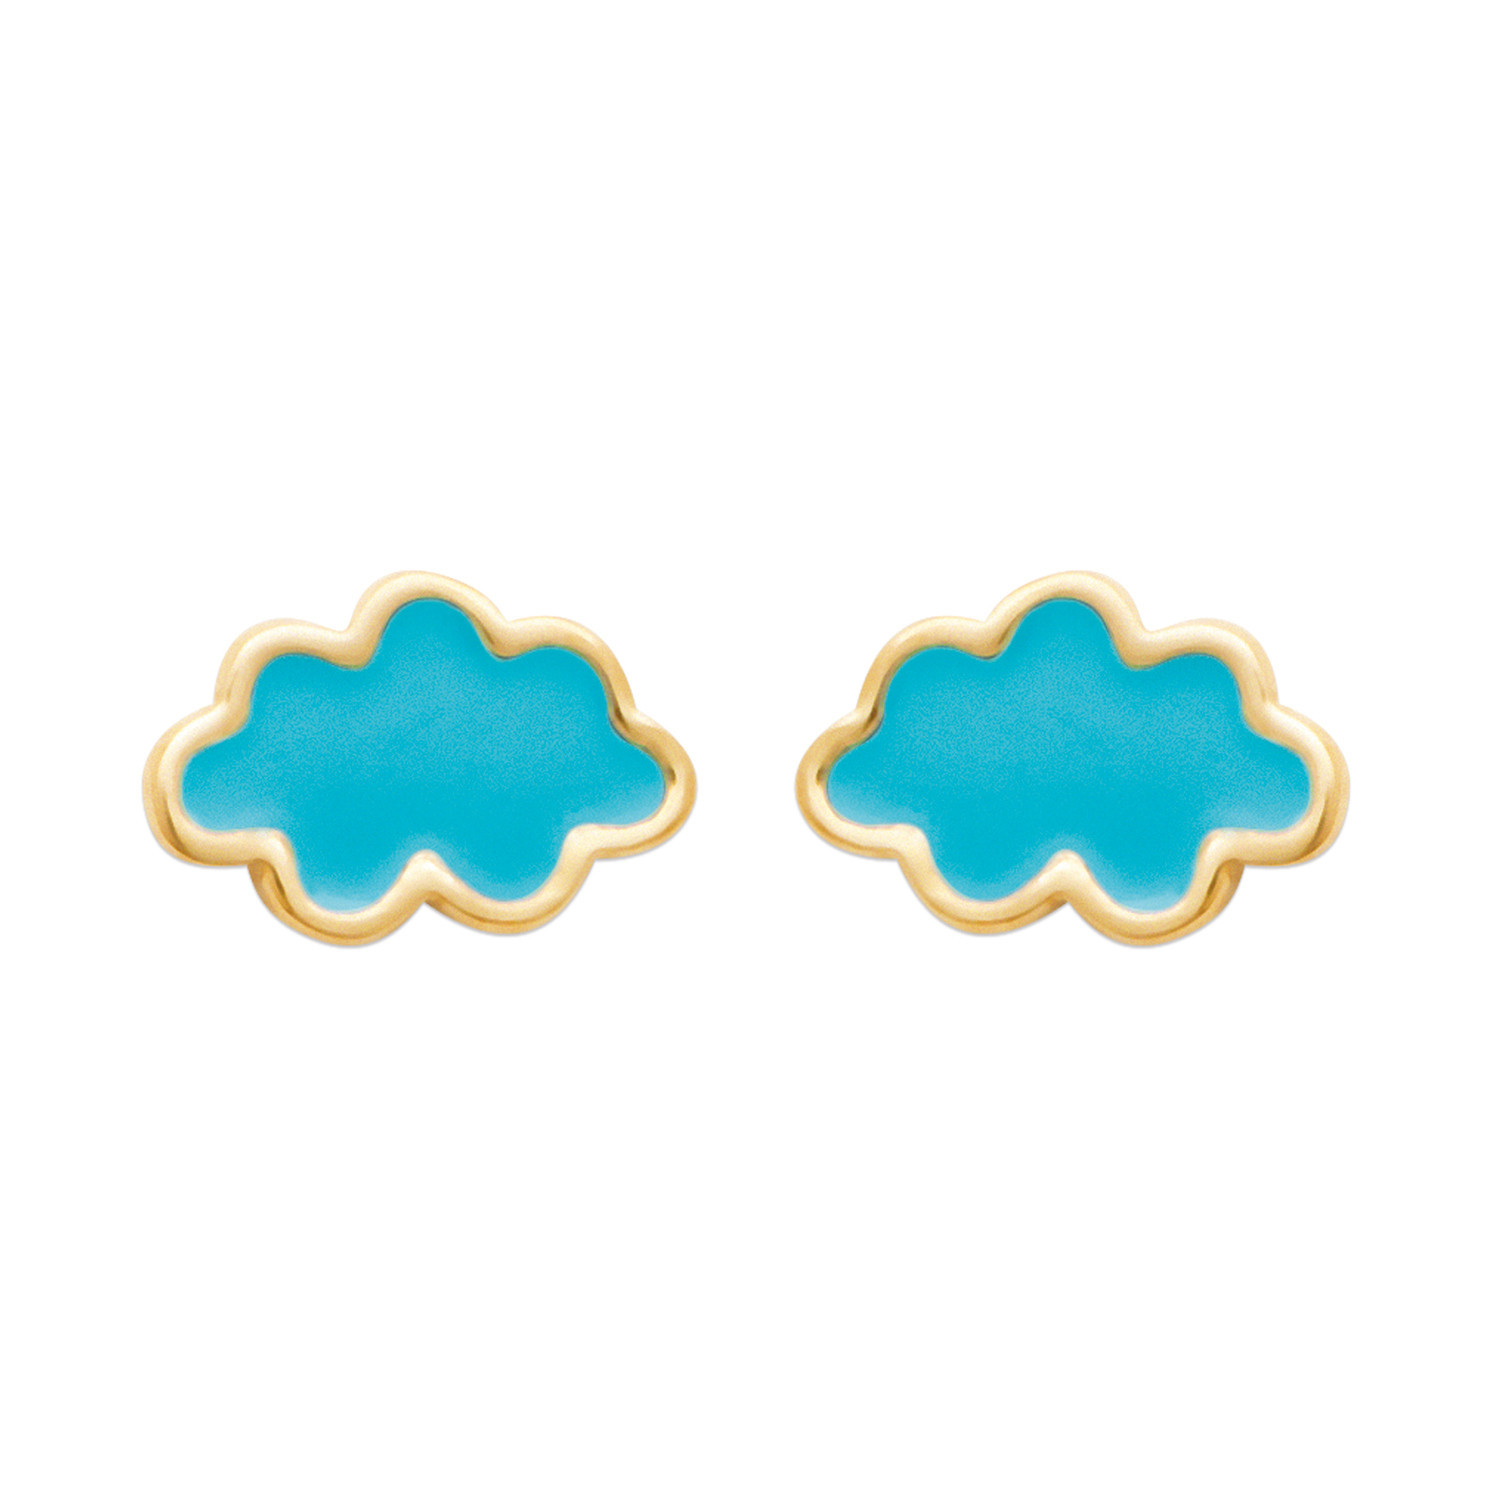 Boucles d'oreilles Brillaxis nuages bleus